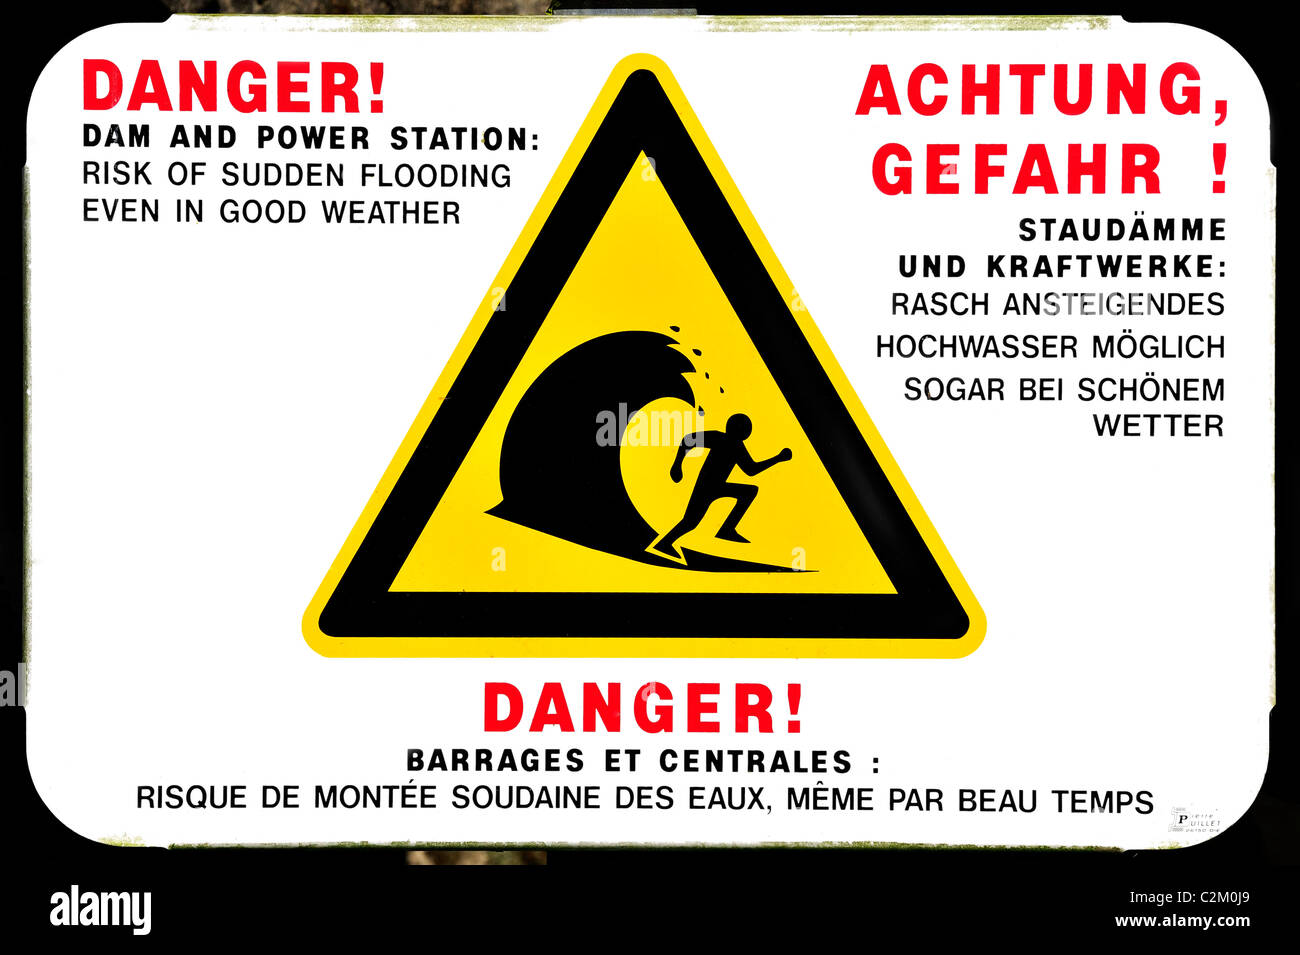 Segnale di avvertimento per indicare le improvvise inondazioni del fiume dalla diga dalla stazione di potenza, Francia Foto Stock